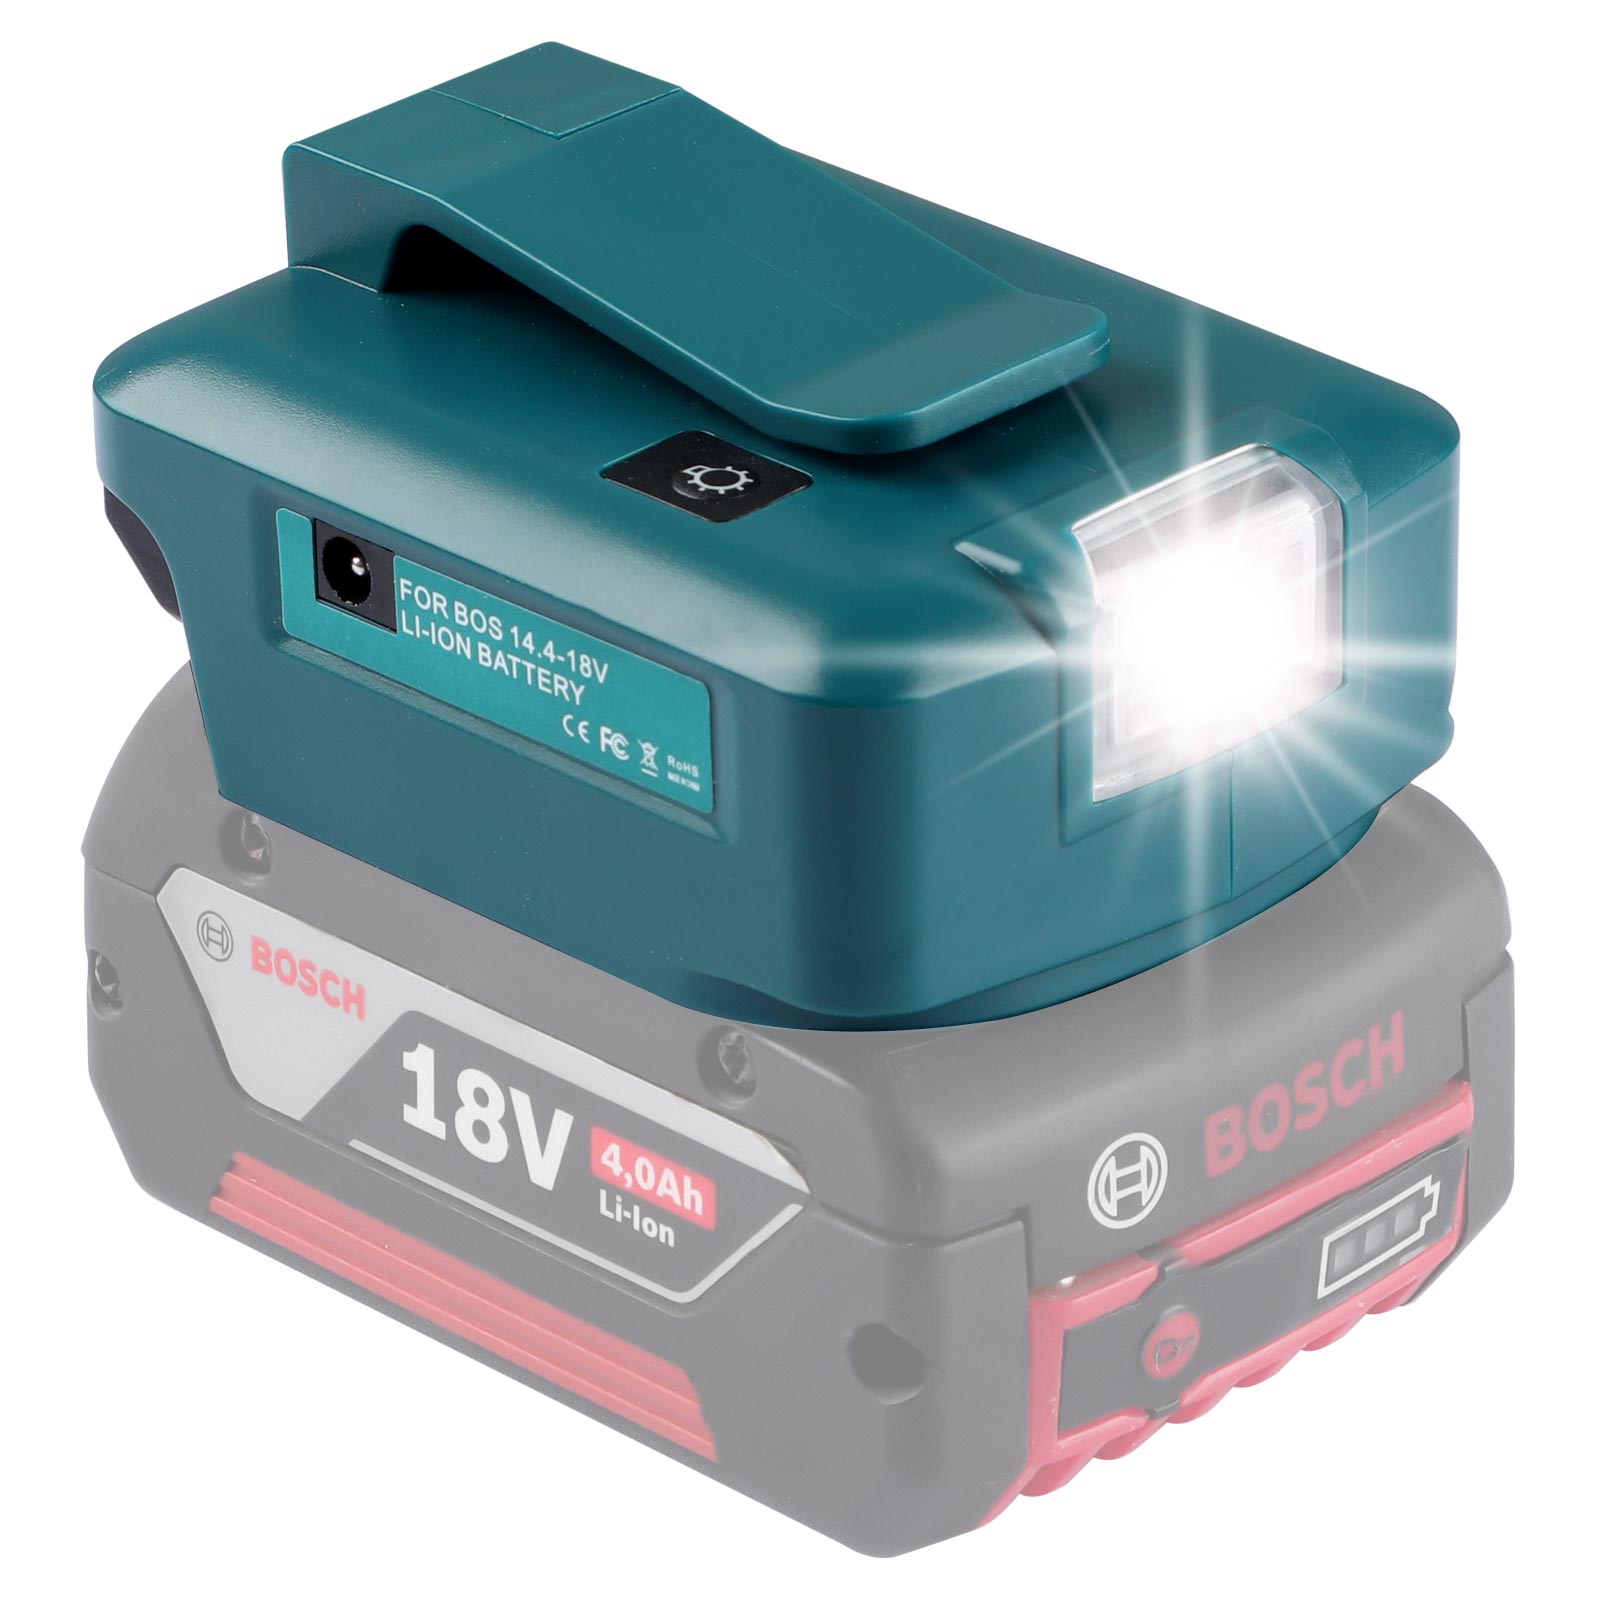 Urun Battery Adapter dirije limyè ak DC Port & 2 USB Port pou Bosch 14.4-18V Lithium Battery Sous pouvwa